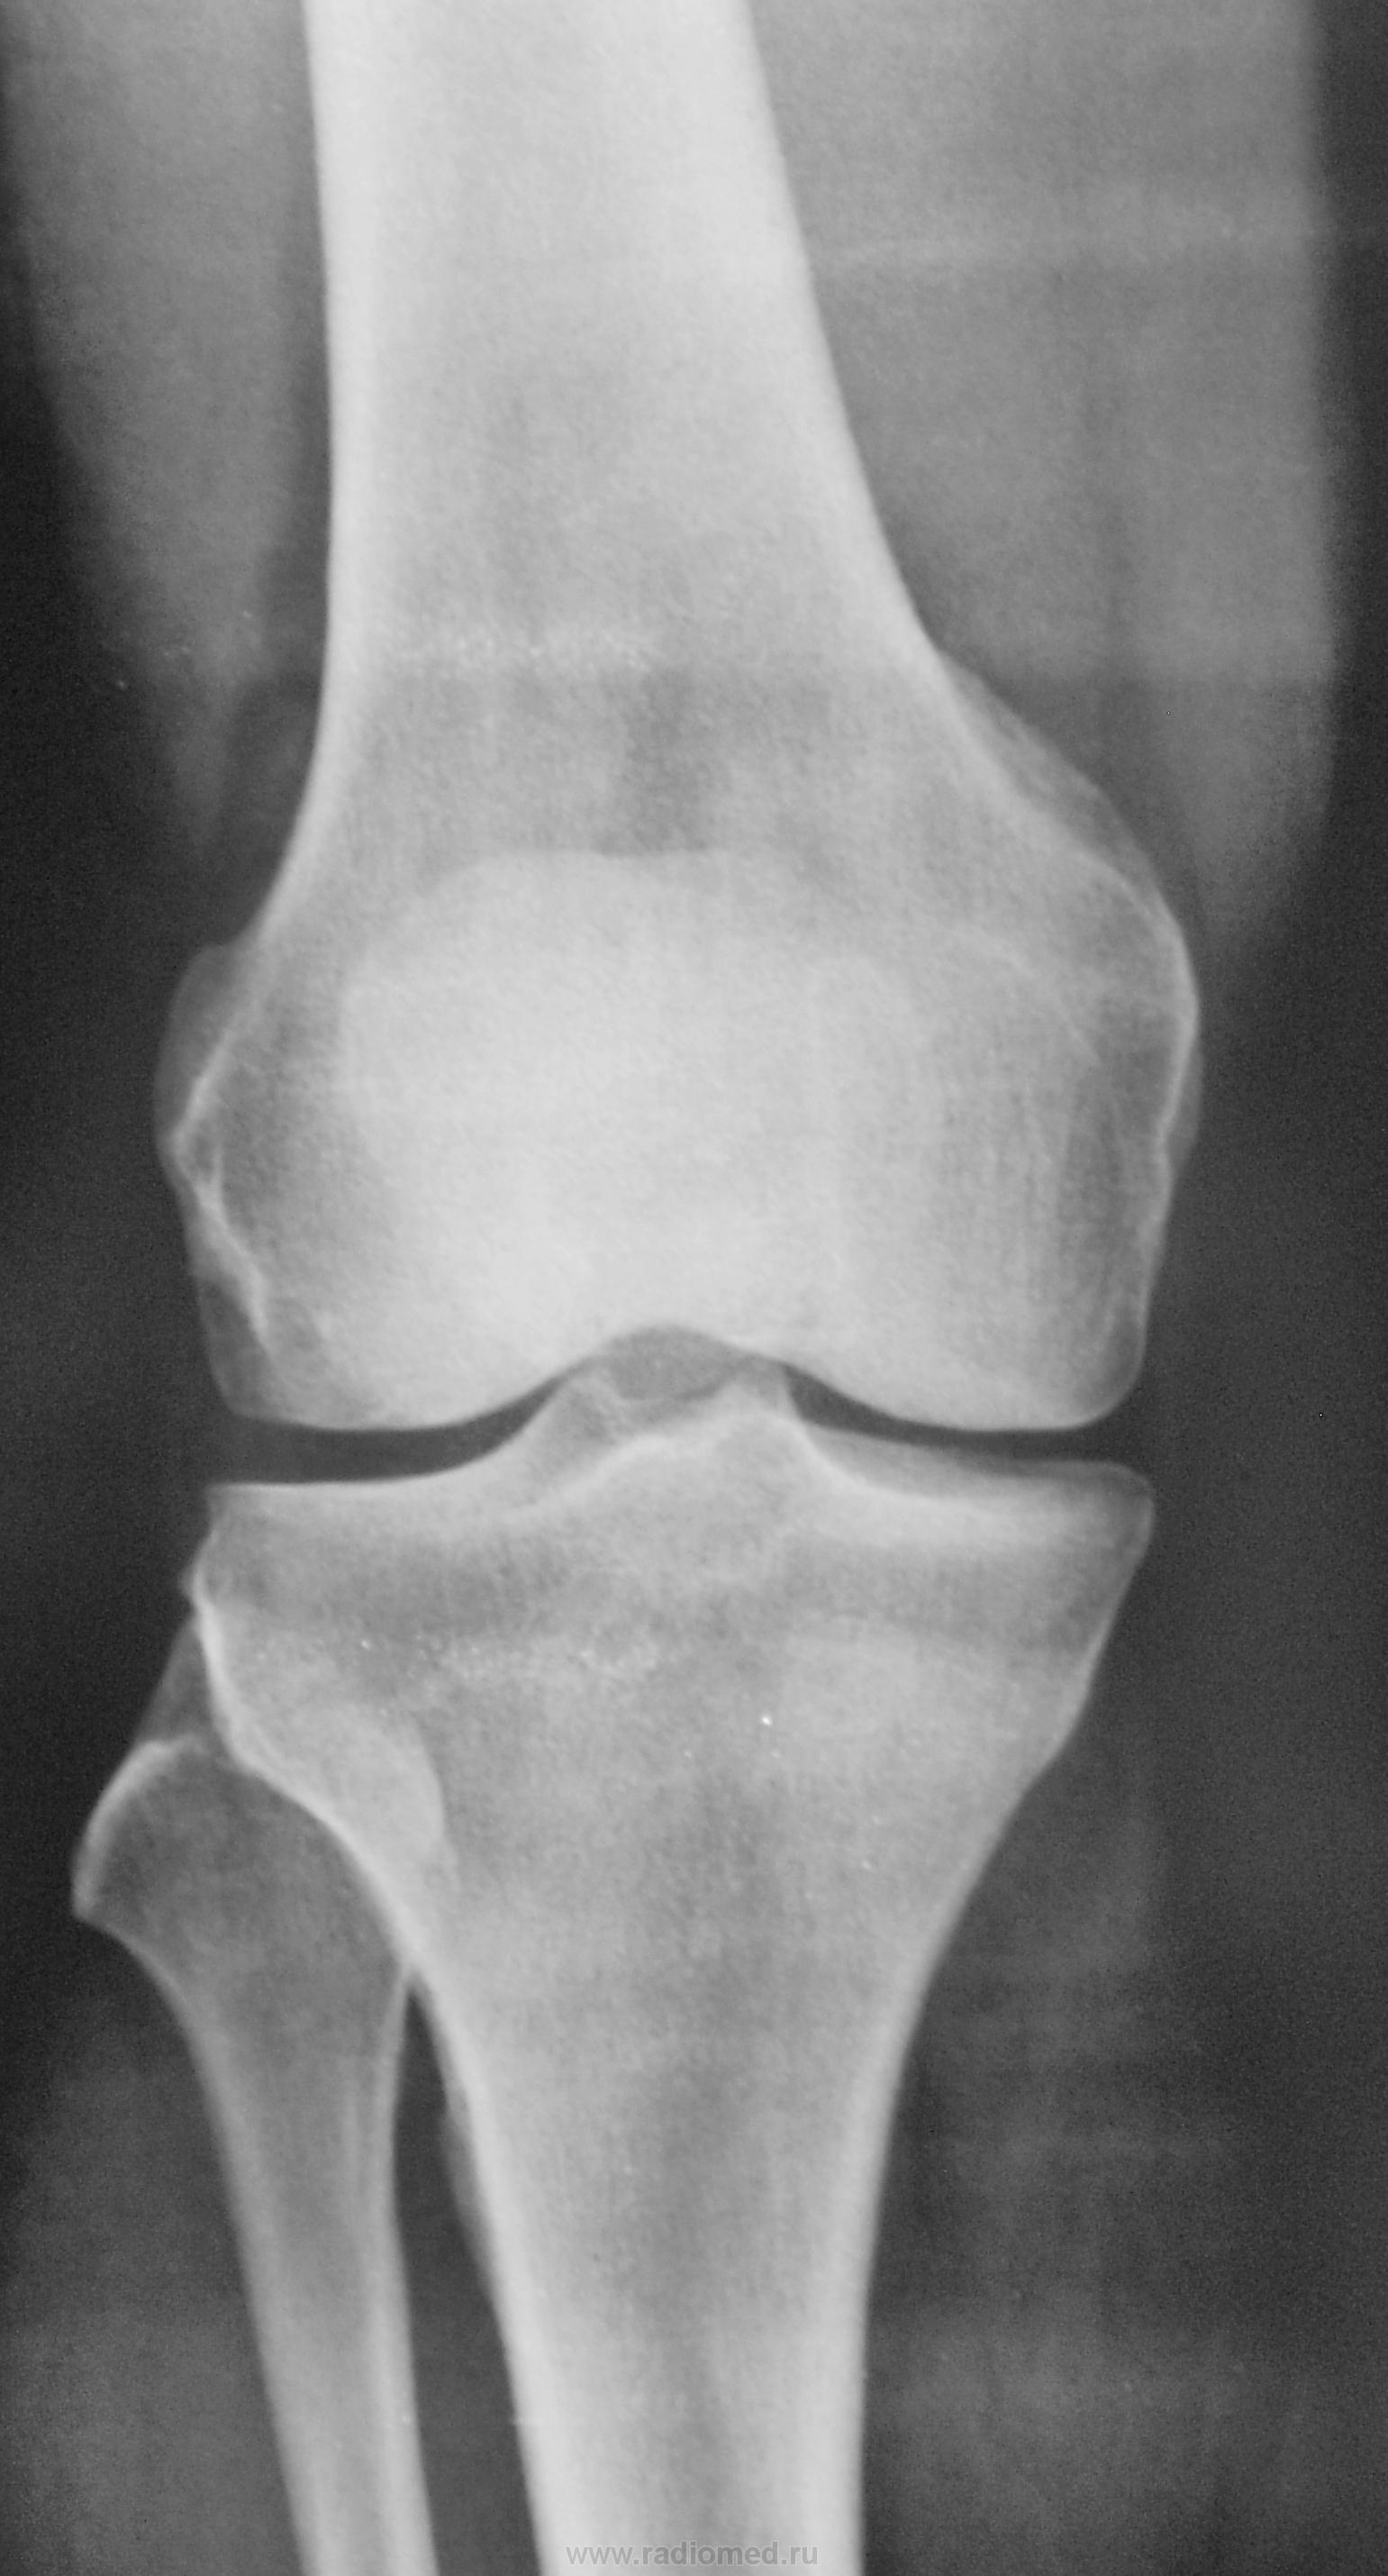 Рентген колена. Гемартроз коленного сустава рентген. Менископатия коленного сустава рентген. Мениск коленного сустава рентген. Гемартроз на рентгене колена.